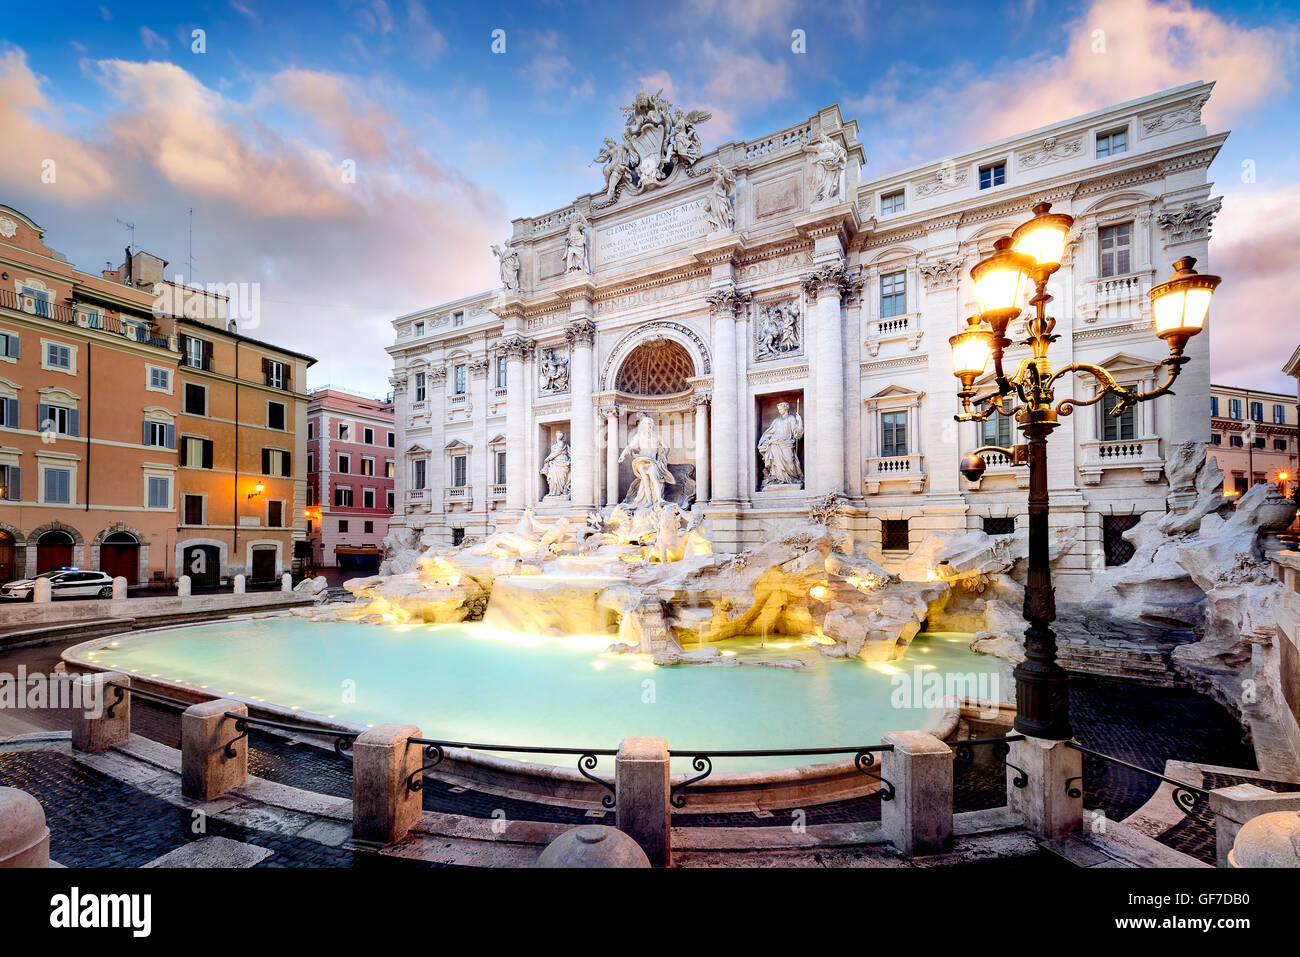 Fontaine de Trevi, la plus grande fontaine baroque dans la ville et l'une des plus célèbres fontaines du monde installé à Rome Italie Banque D'Images